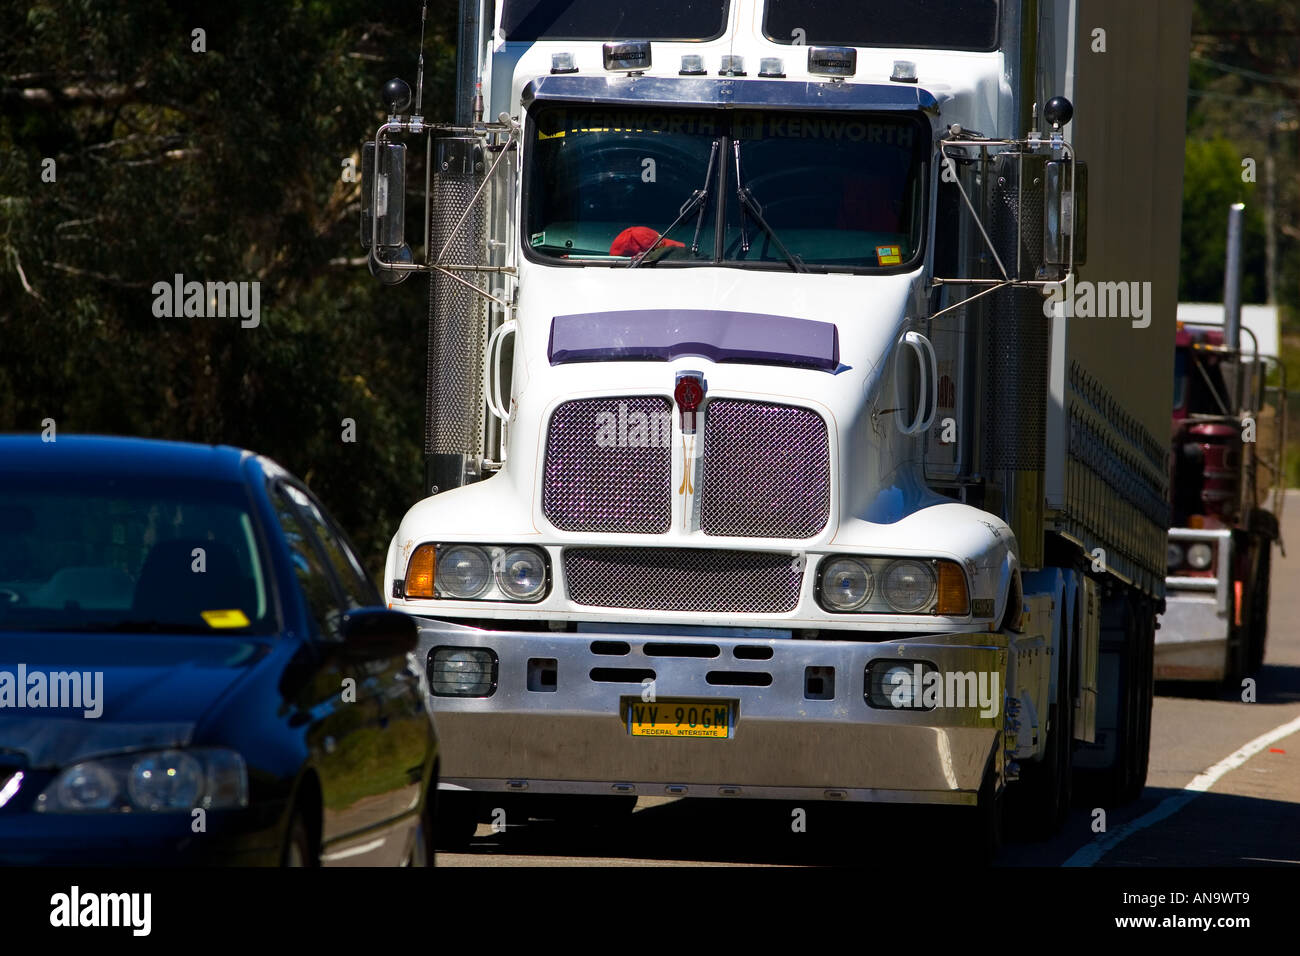 Chariot sur la grande autoroute de l'ouest de Sydney à Adelaide Australie Nouvelle Galles du Sud Banque D'Images